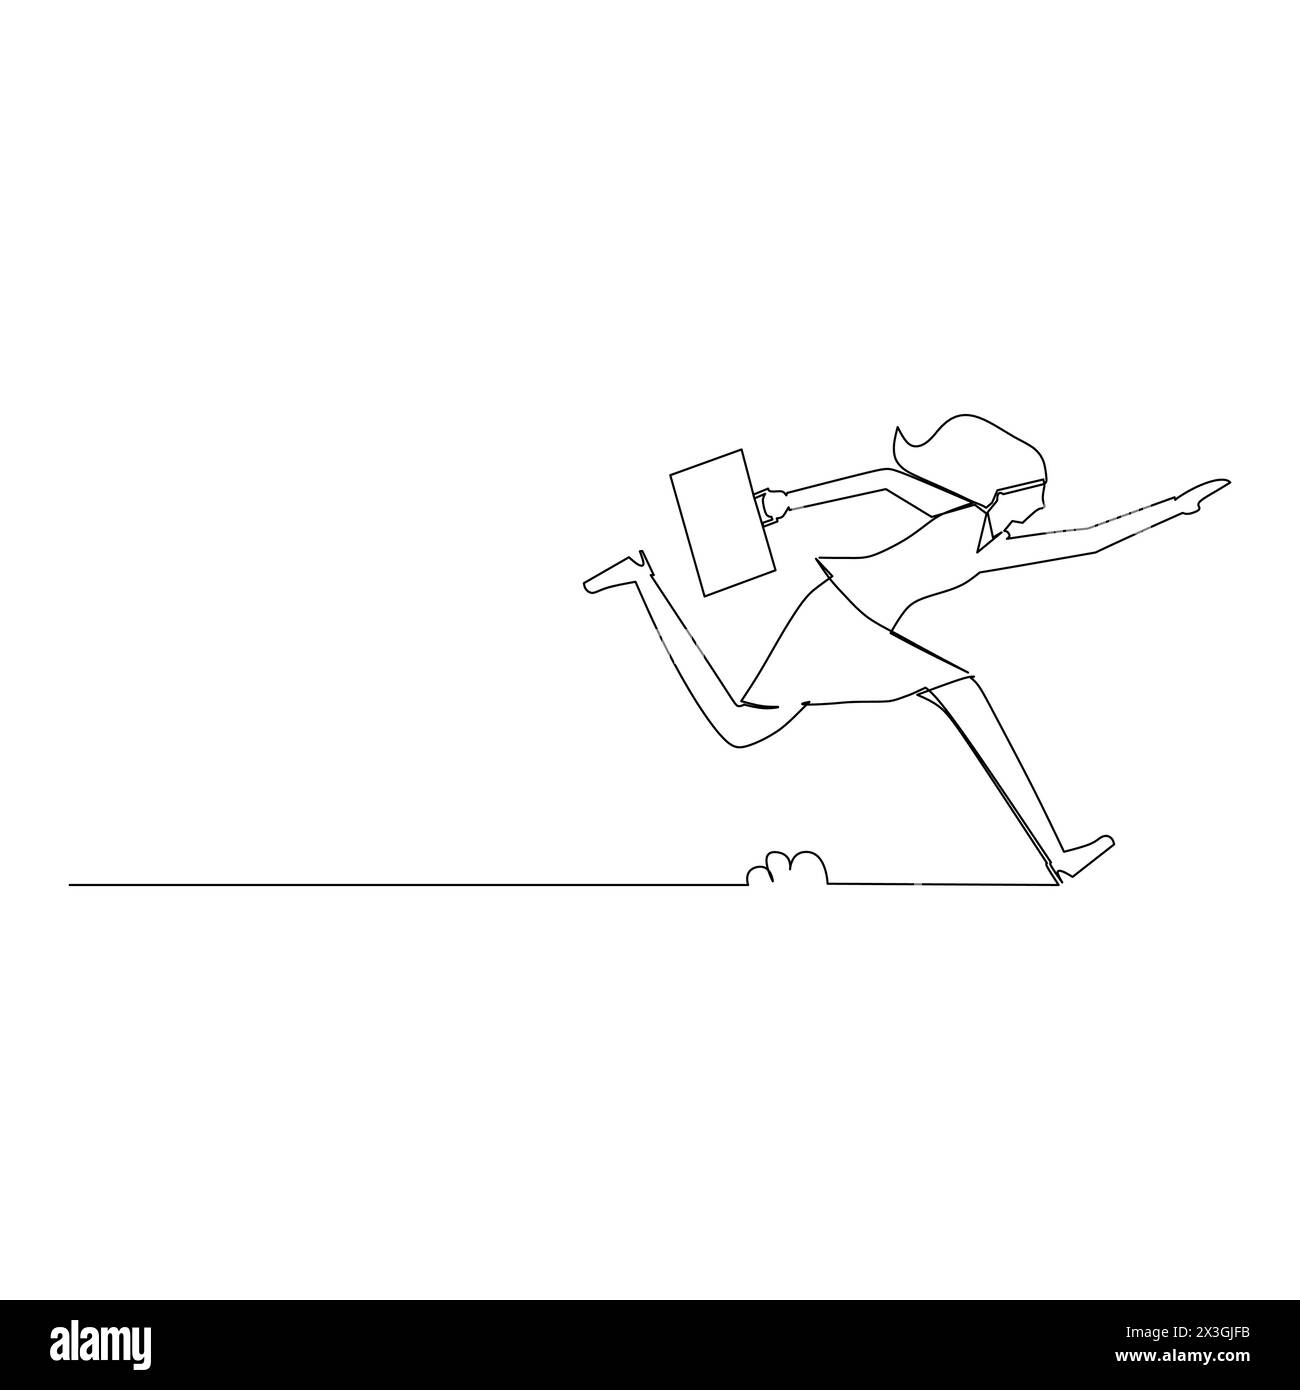 Durchgehende Linienzeichnung einer Frau mit einem laufenden Aktenkoffer. Spirit in Business Concept. Vektorillustration auf weißem Hintergrund. Stock Vektor